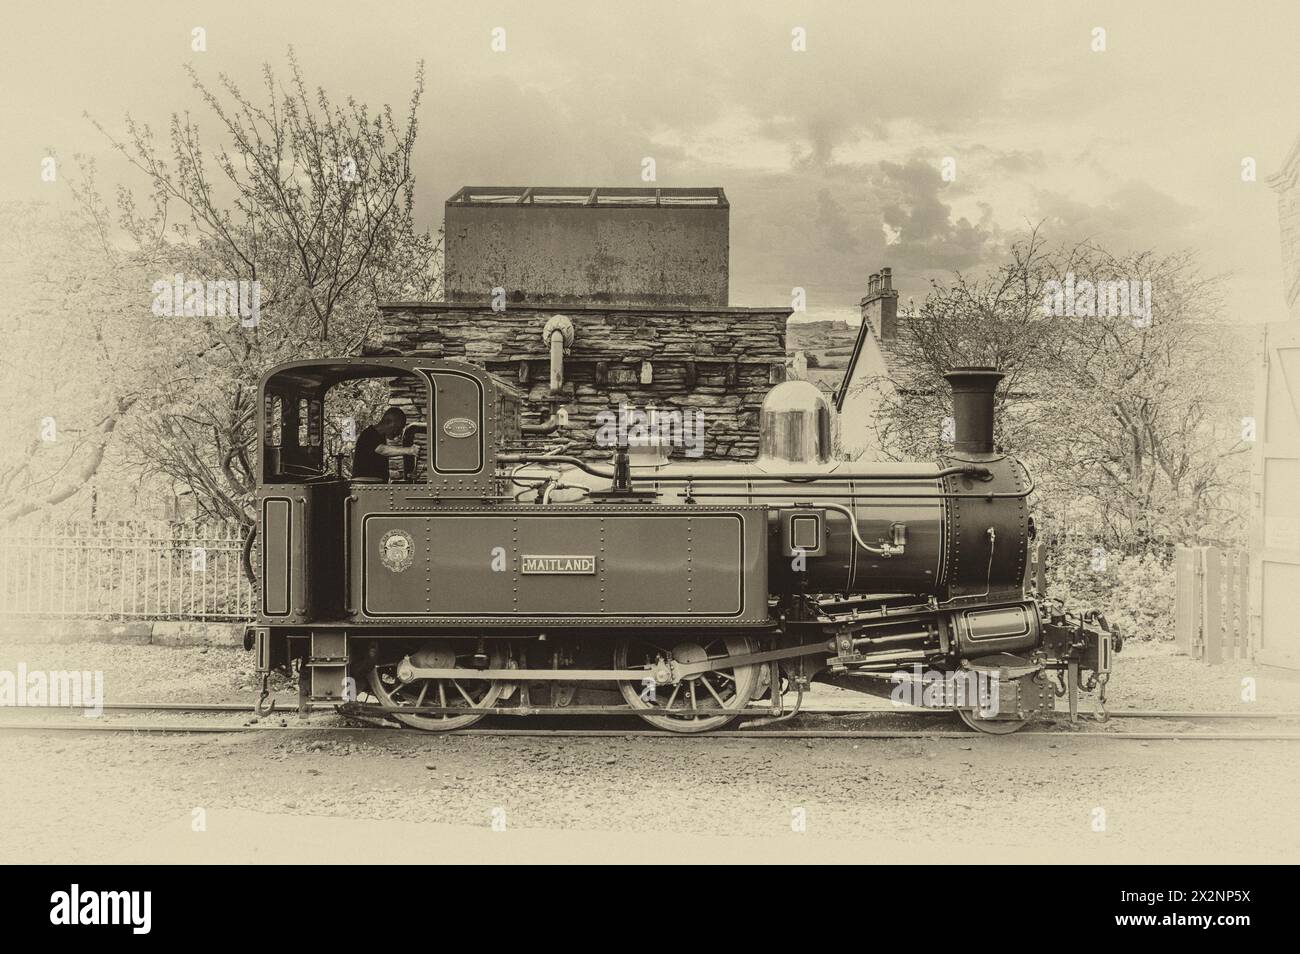 L'image est du train à vapeur Maitland qui circule entre Douglas et la station balnéaire côtière de Port Erin sur la pointe sud-ouest de l'île de Man Banque D'Images